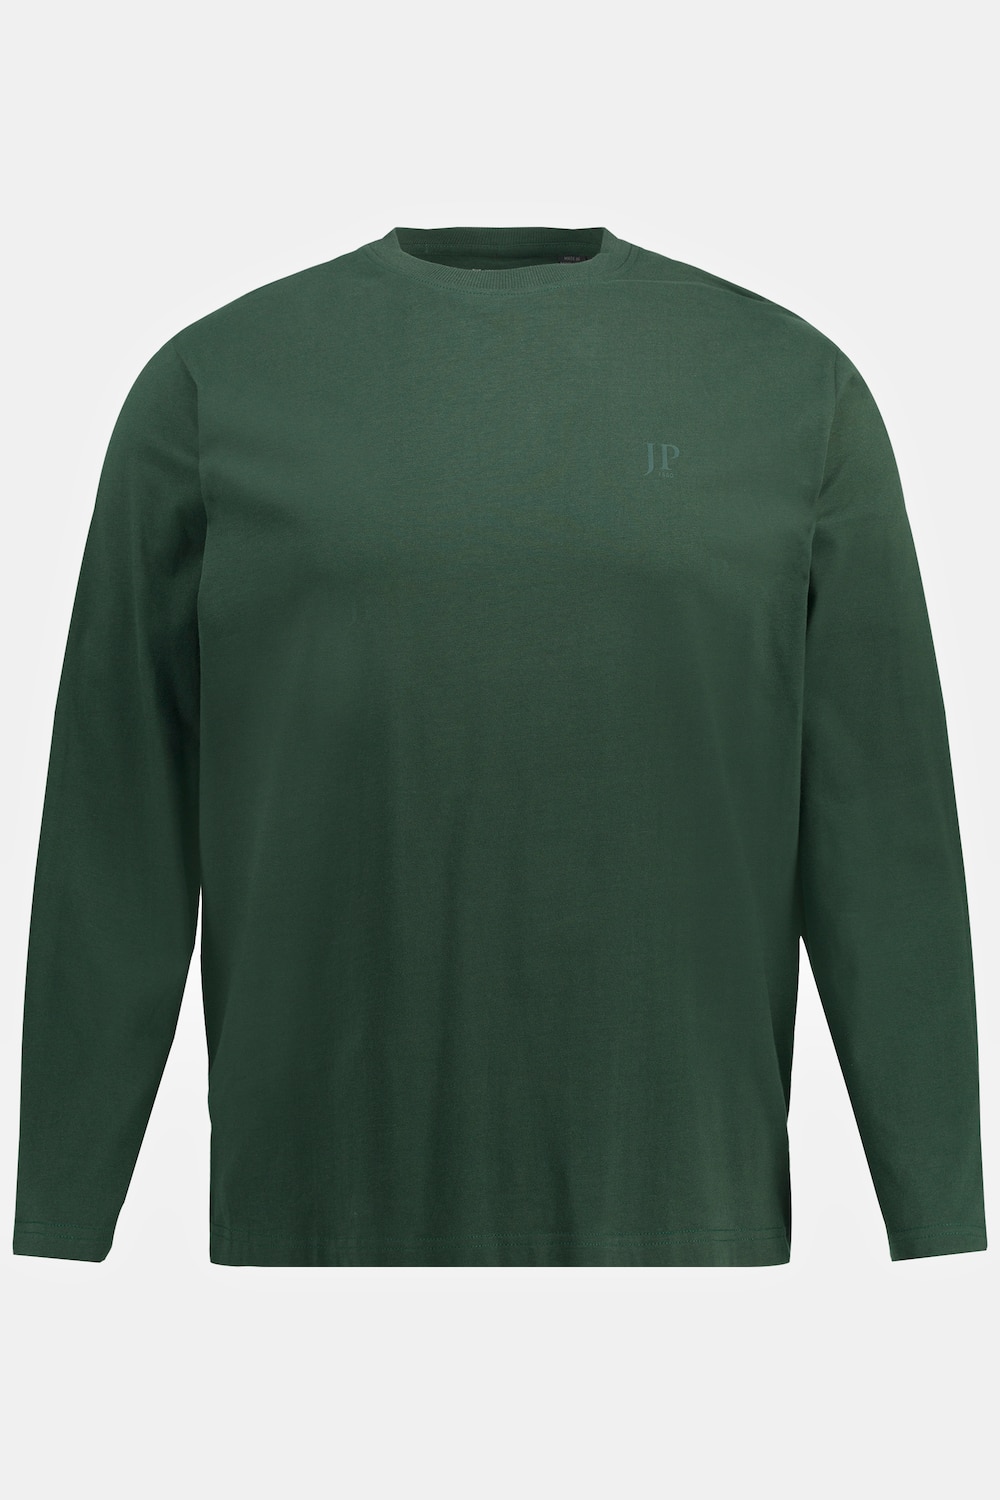 Grote Maten shirt, Heren, groen, Maat: 3XL, Katoen, JP1880